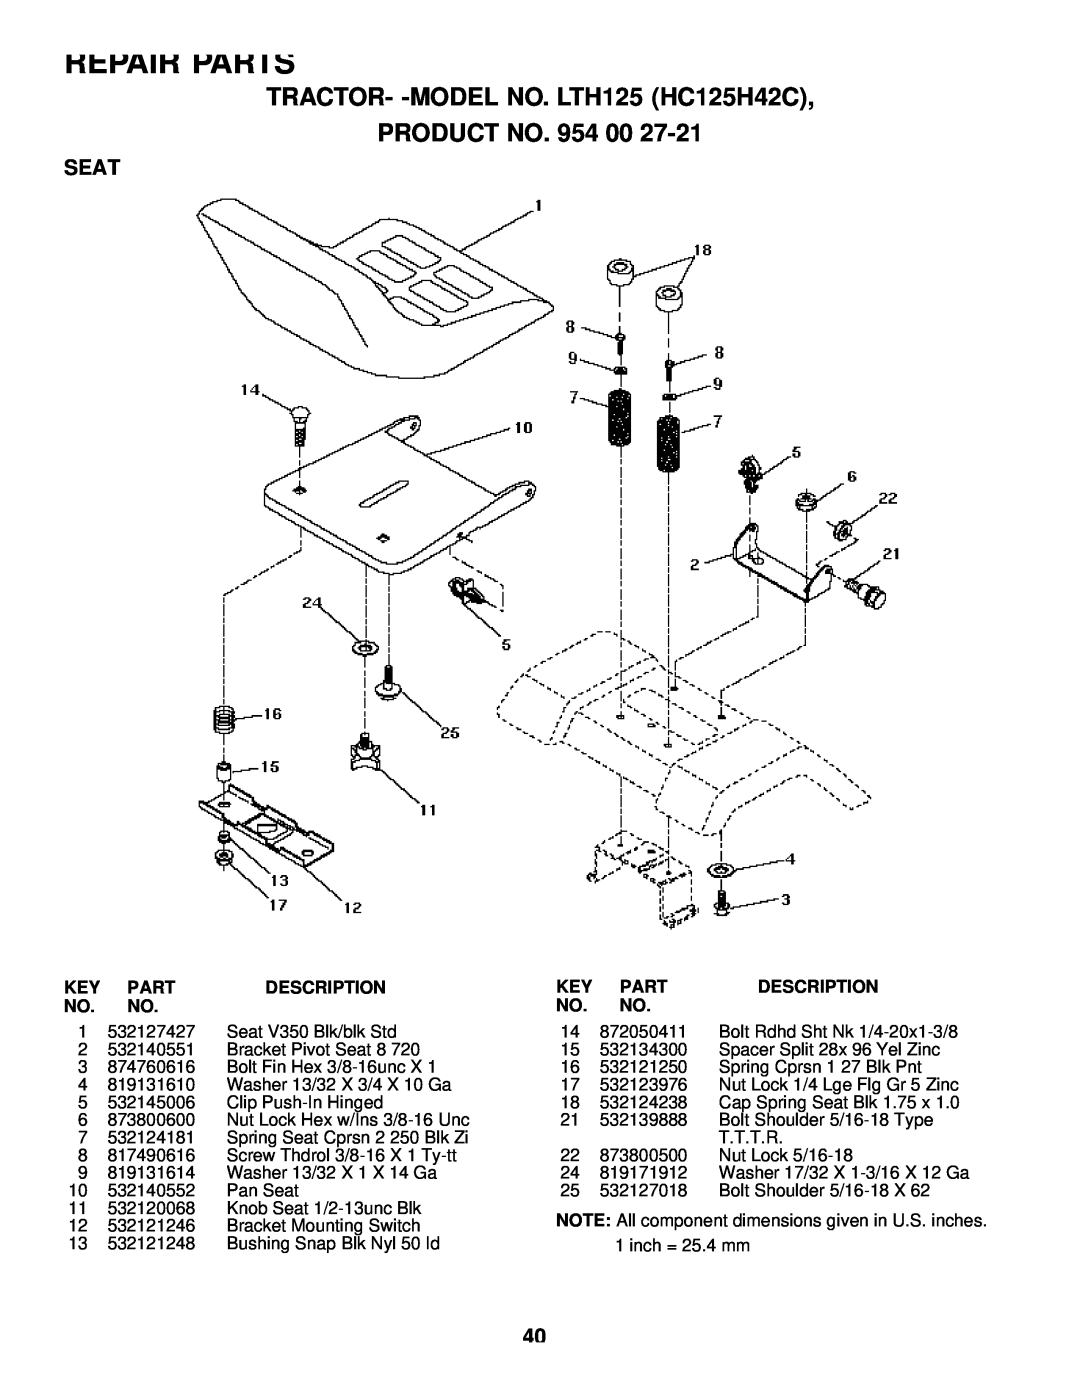 Husqvarna owner manual Seat, Repair Parts, TRACTOR- -MODEL NO. LTH125 HC125H42C PRODUCT NO, Description 